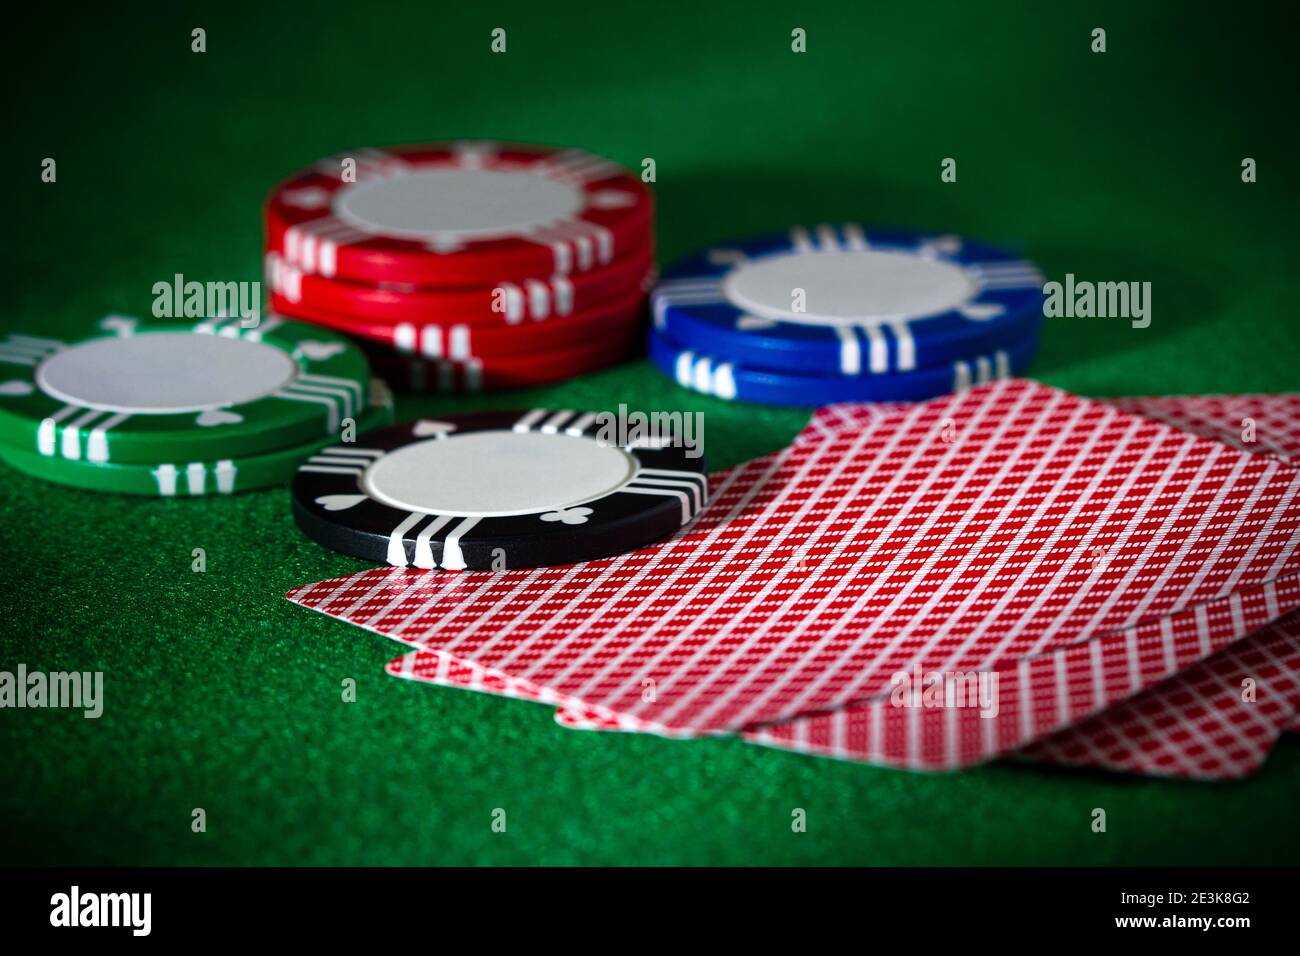 Scène de jeux de cartes, jetons, jeux, poker, blackjack ou Texas Hold 'EM à Las Vegas ou casino Banque D'Images